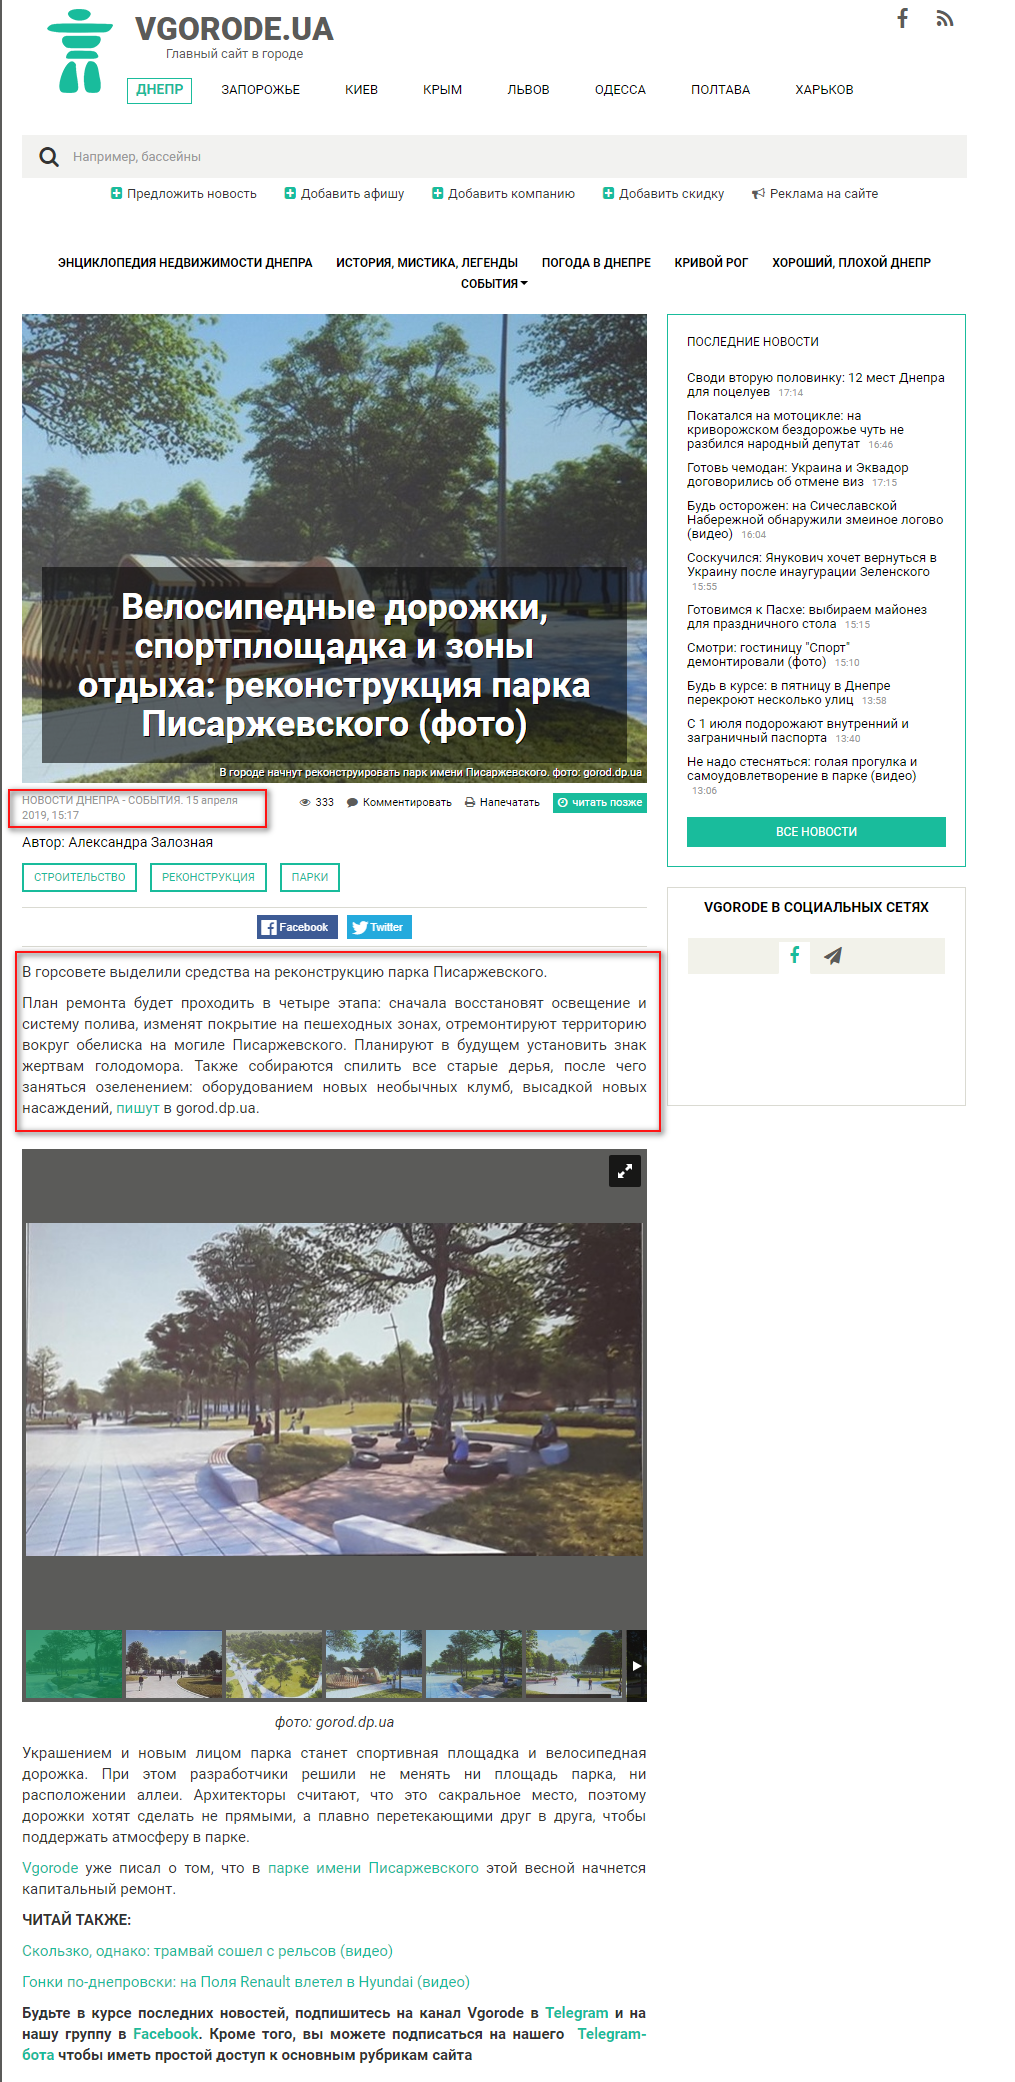 https://dp.vgorode.ua/news/sobytyia/394389-velosypednye-dorozhky-sportploschadka-y-zony-otdykha-rekonstruktsyia-parka-pysarzhevskoho-foto